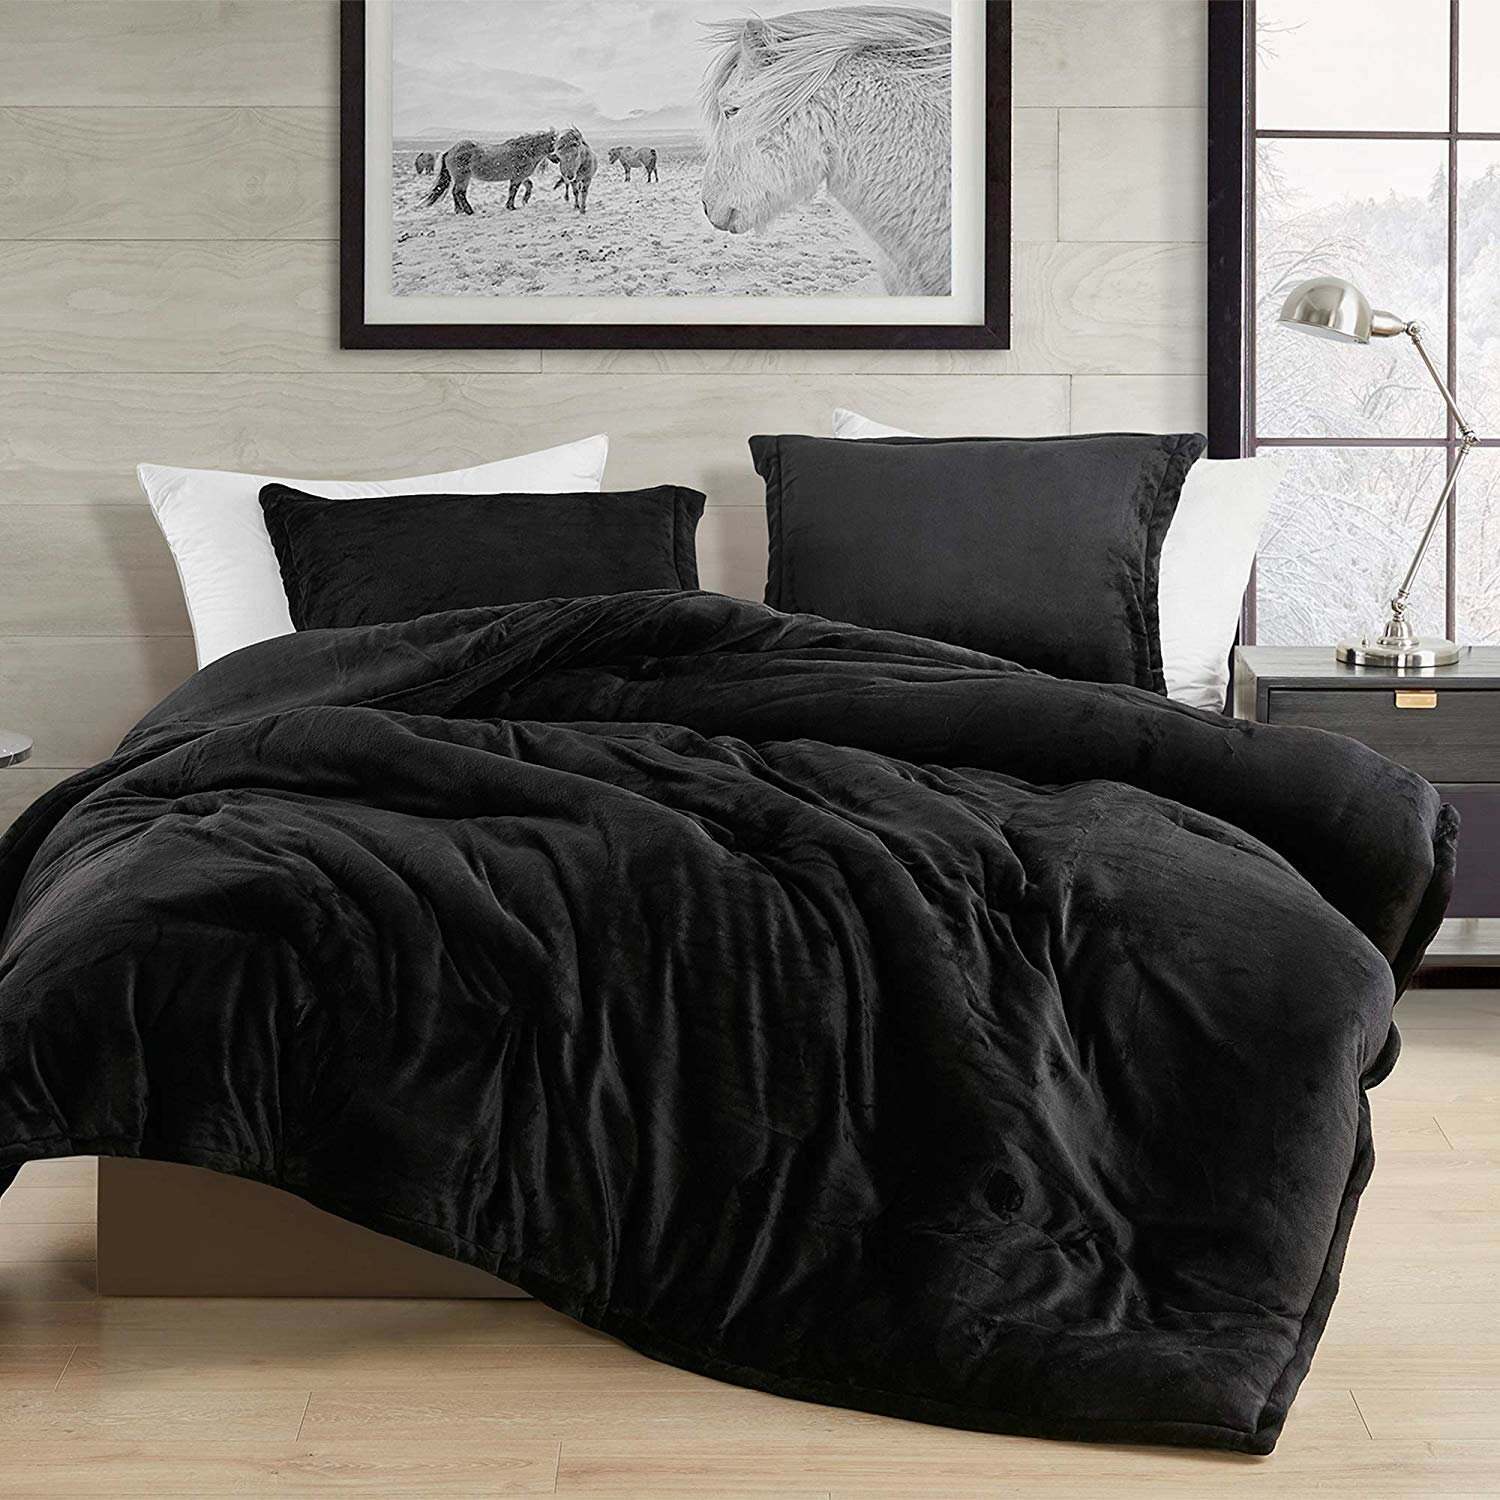 black bedding sets king size